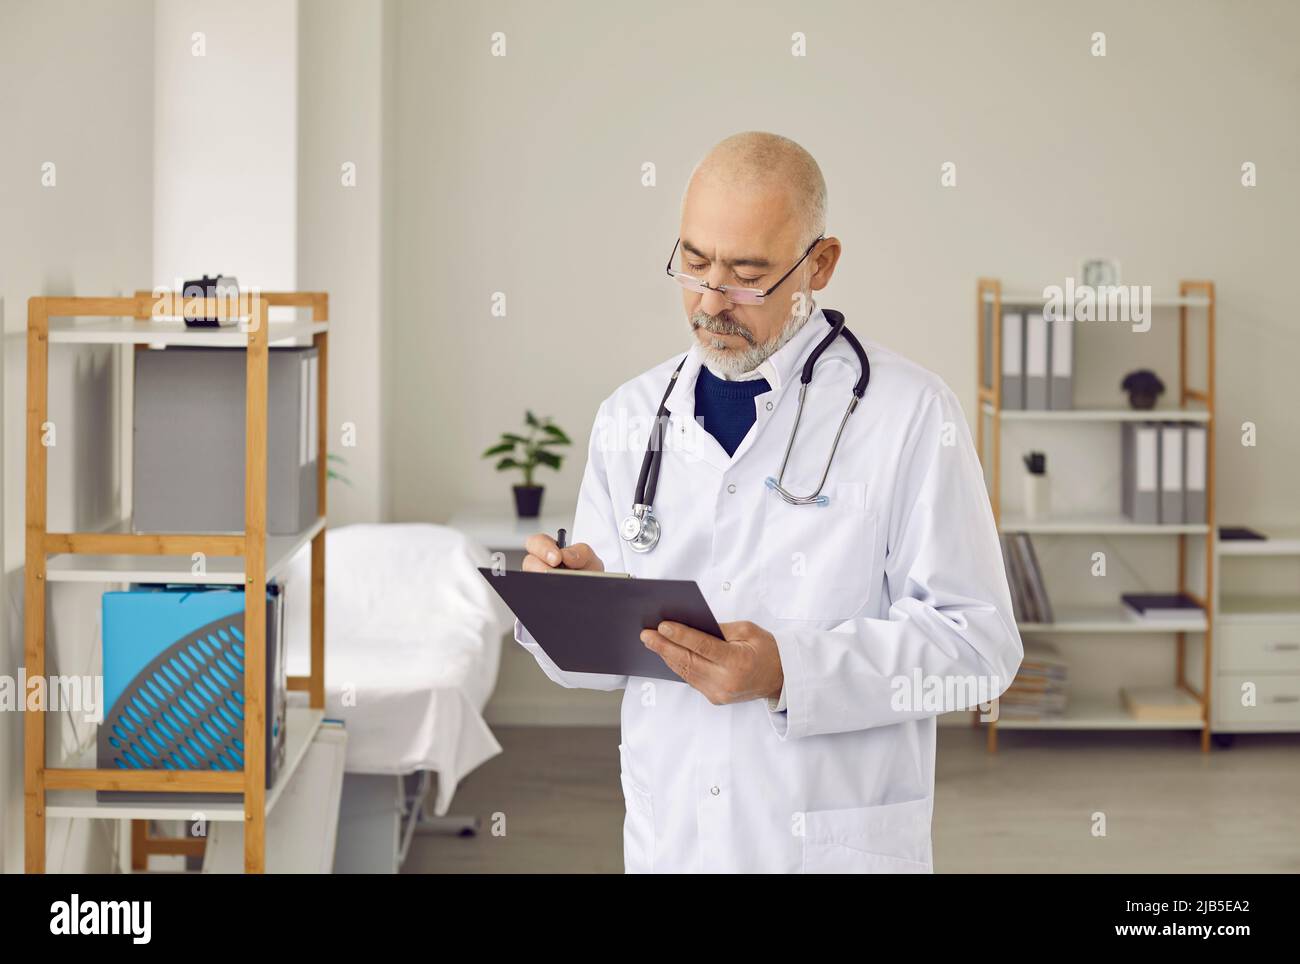 Un médecin de sexe masculin plus âgé écrit sur une carte médicale Banque D'Images